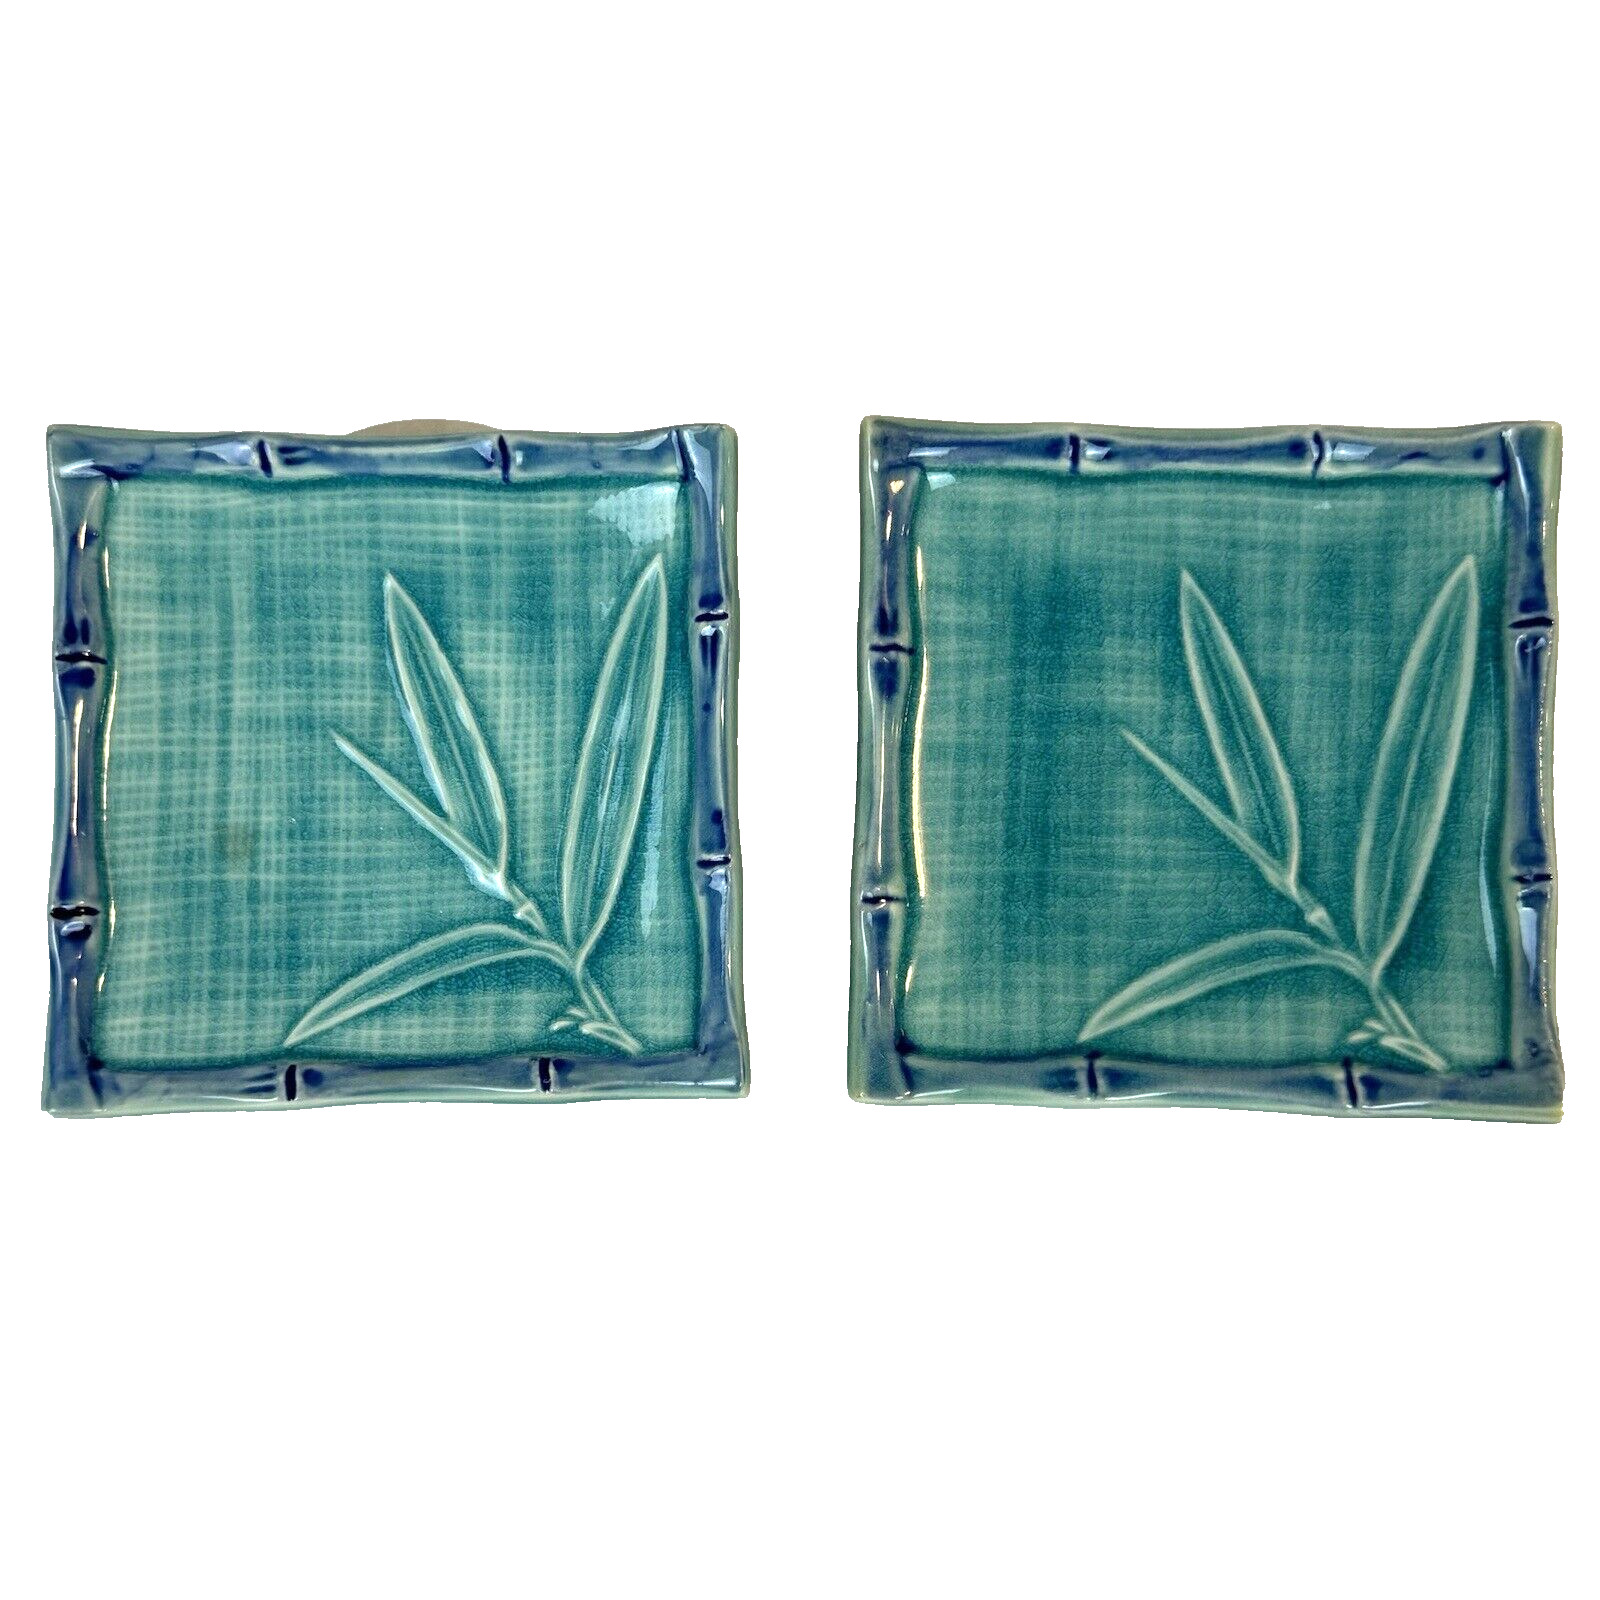 Vintage Teal & Blue Ceramic Curved Tile Trinket Trays Set of 2 MCM Bamboo